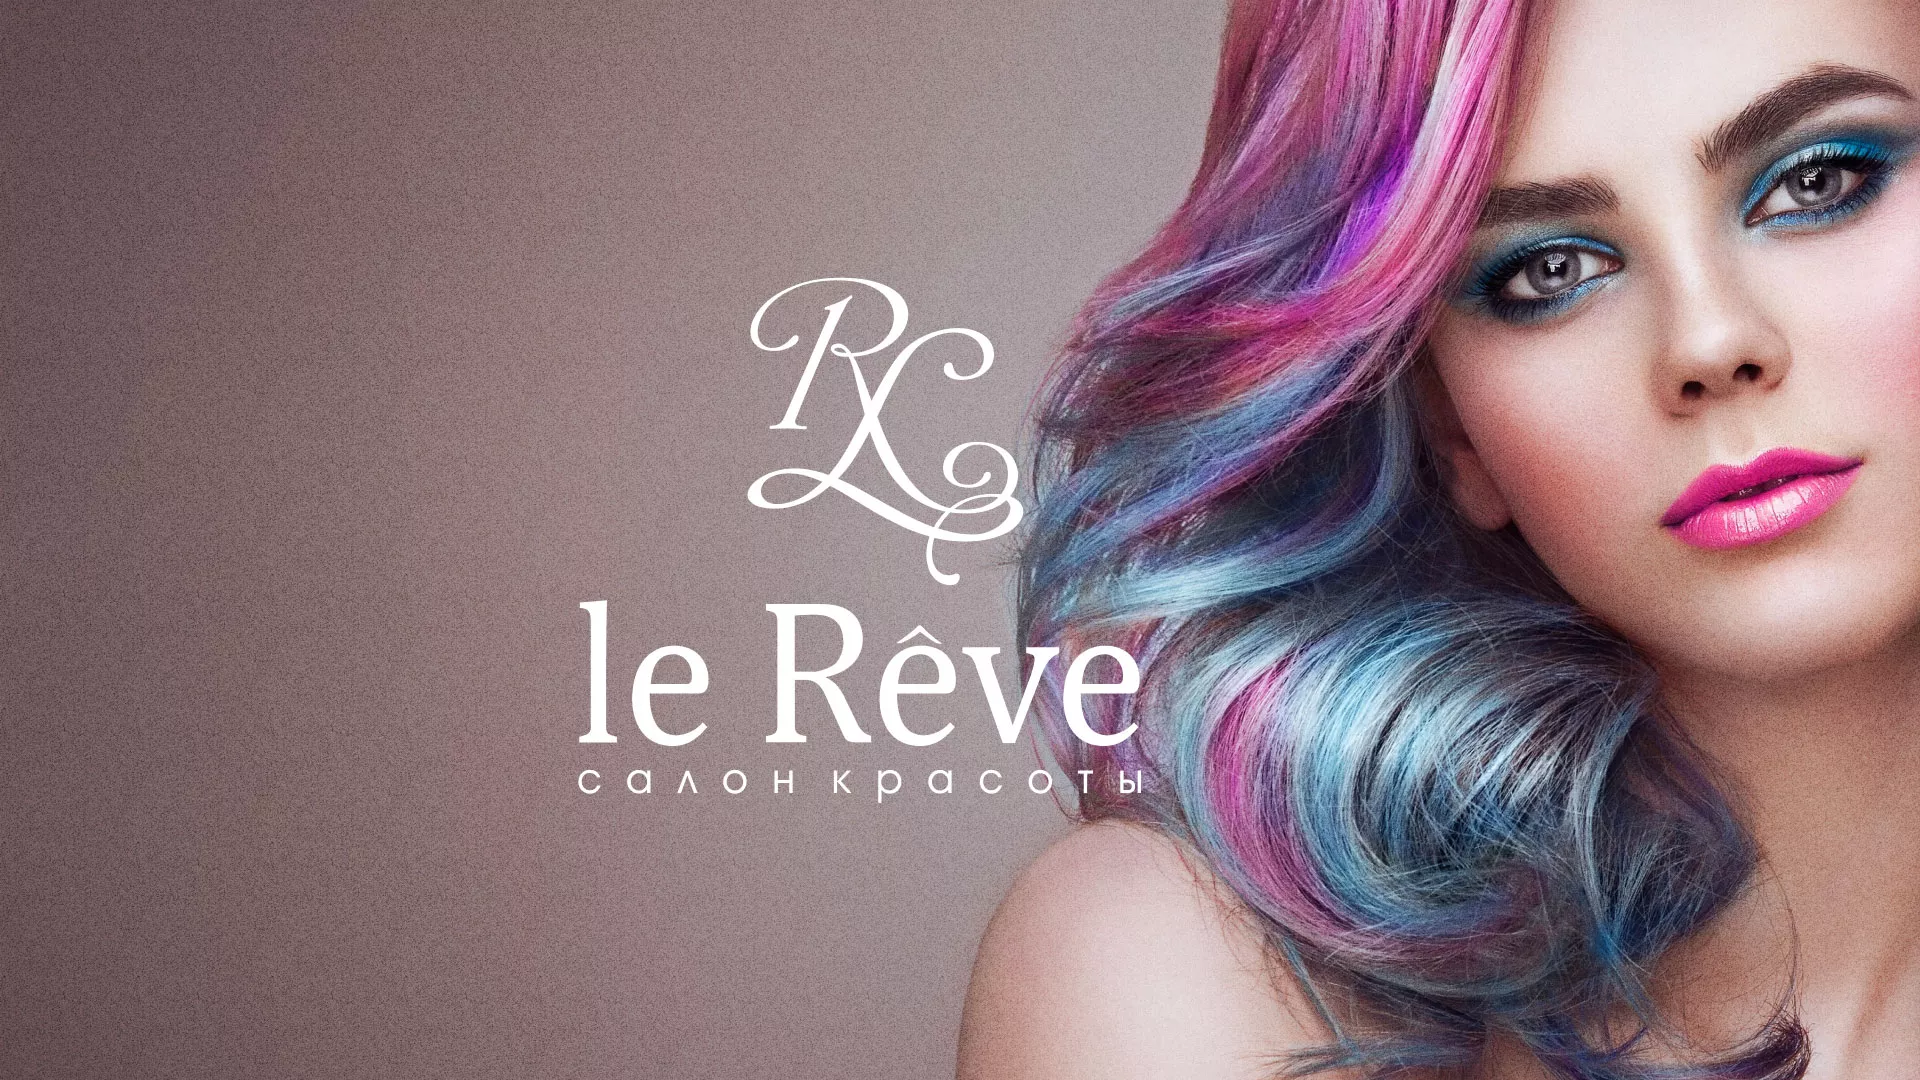 Создание сайта для салона красоты «Le Reve» в Уварово